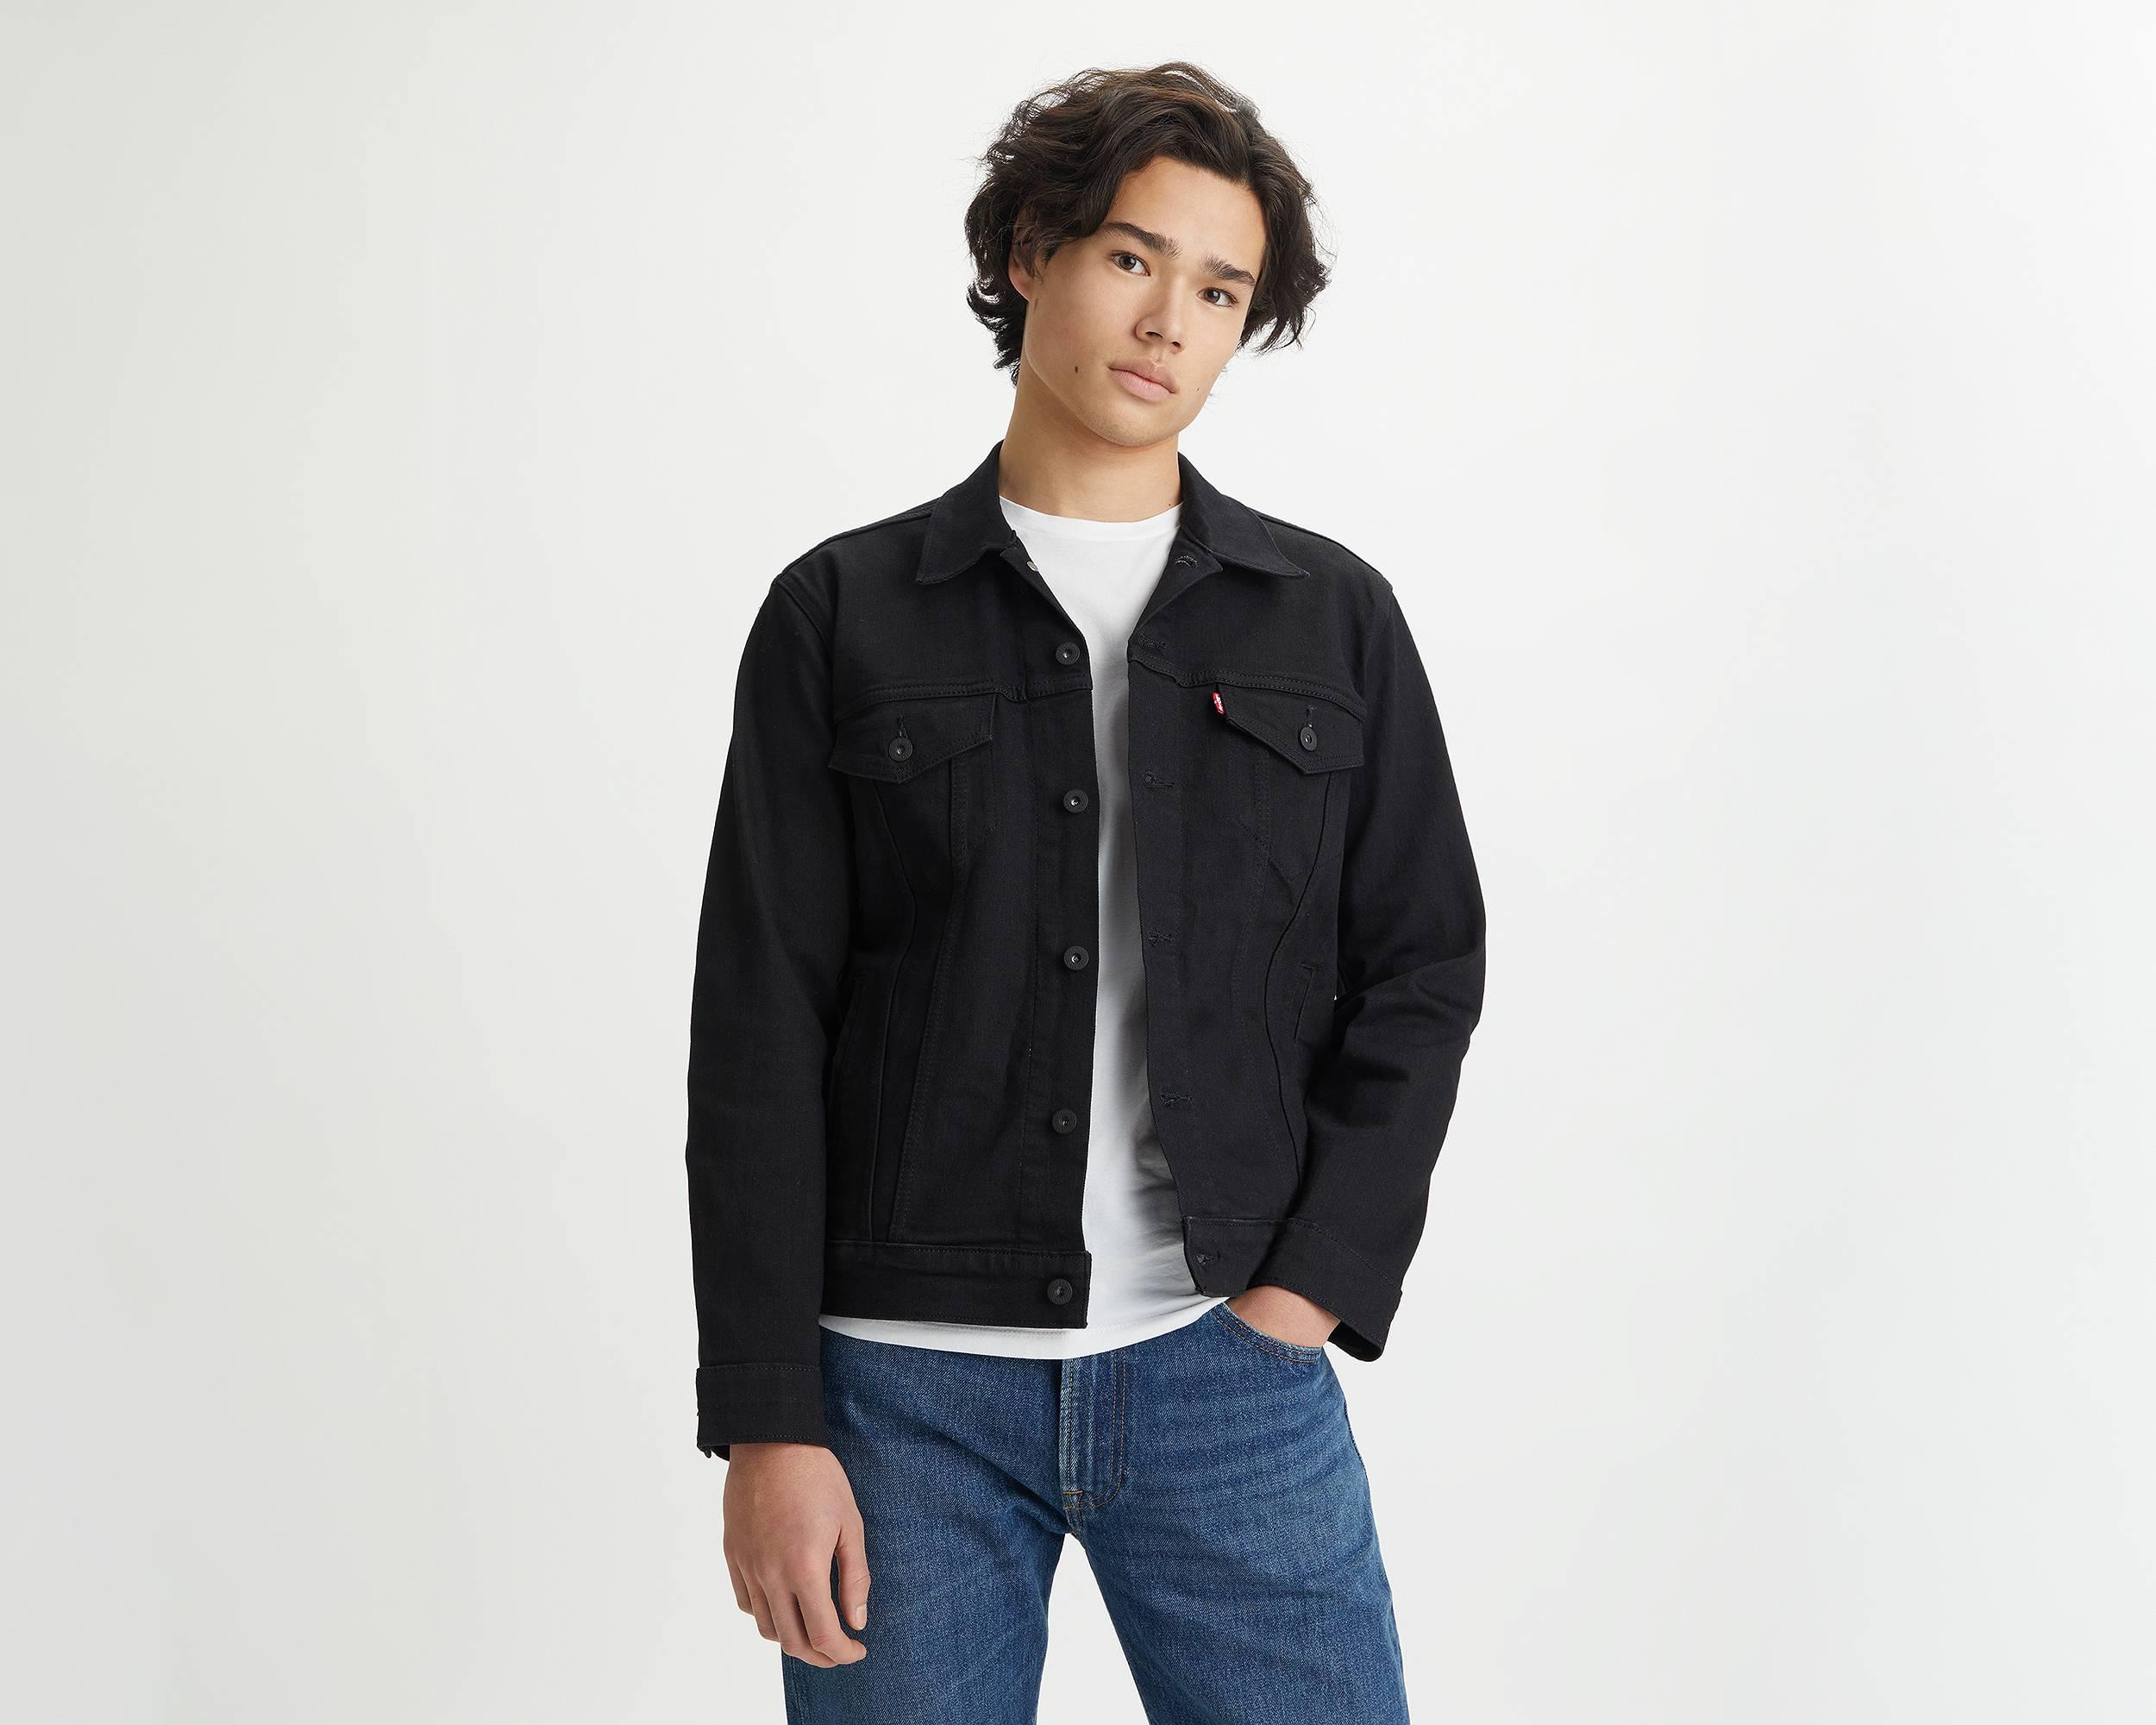 ER 'Its fake' denim jacket - J.Rep Virtual Store